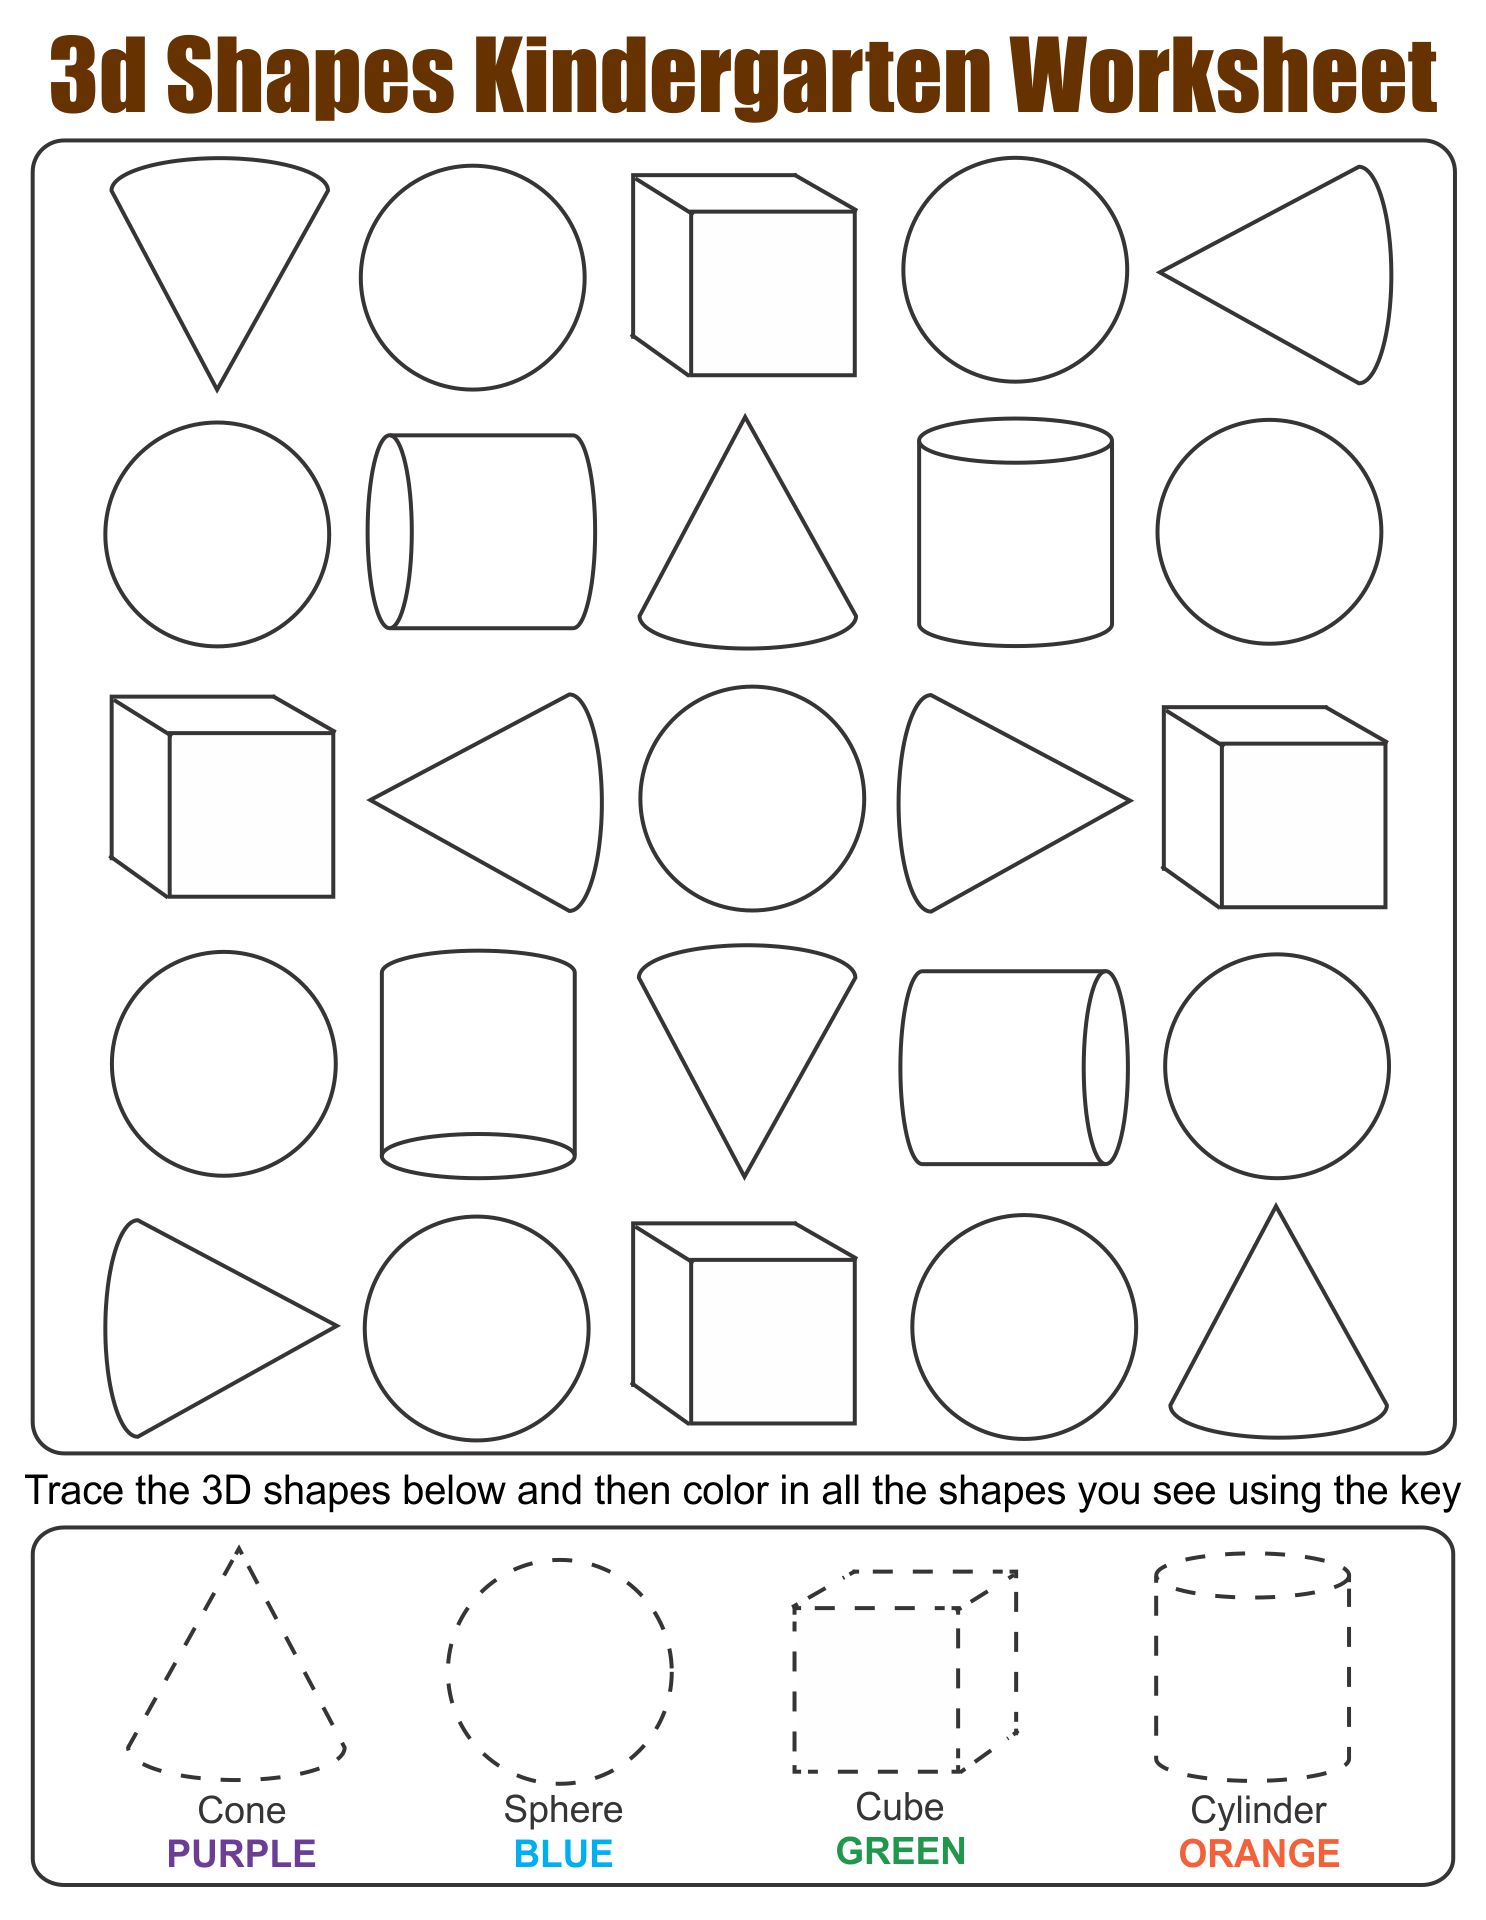 4-best-images-of-3d-shapes-worksheets-printables-kindergarten-3d